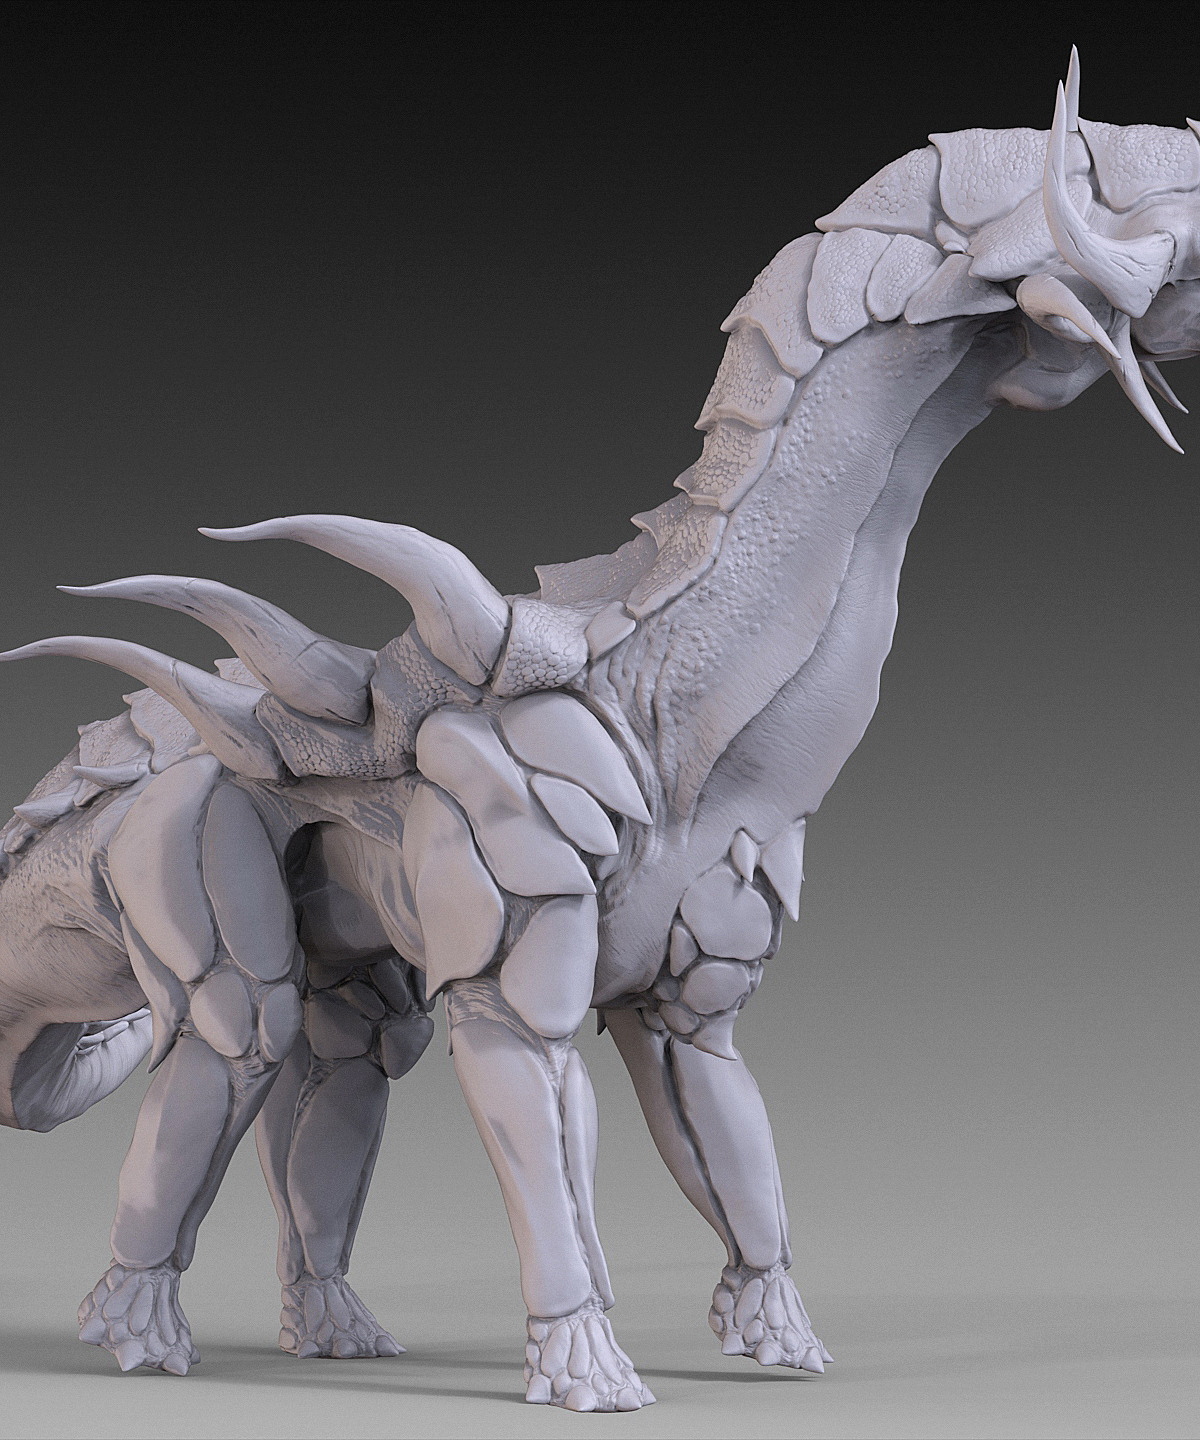 2015_08_Dino_DigitalSculpting_03.jpg